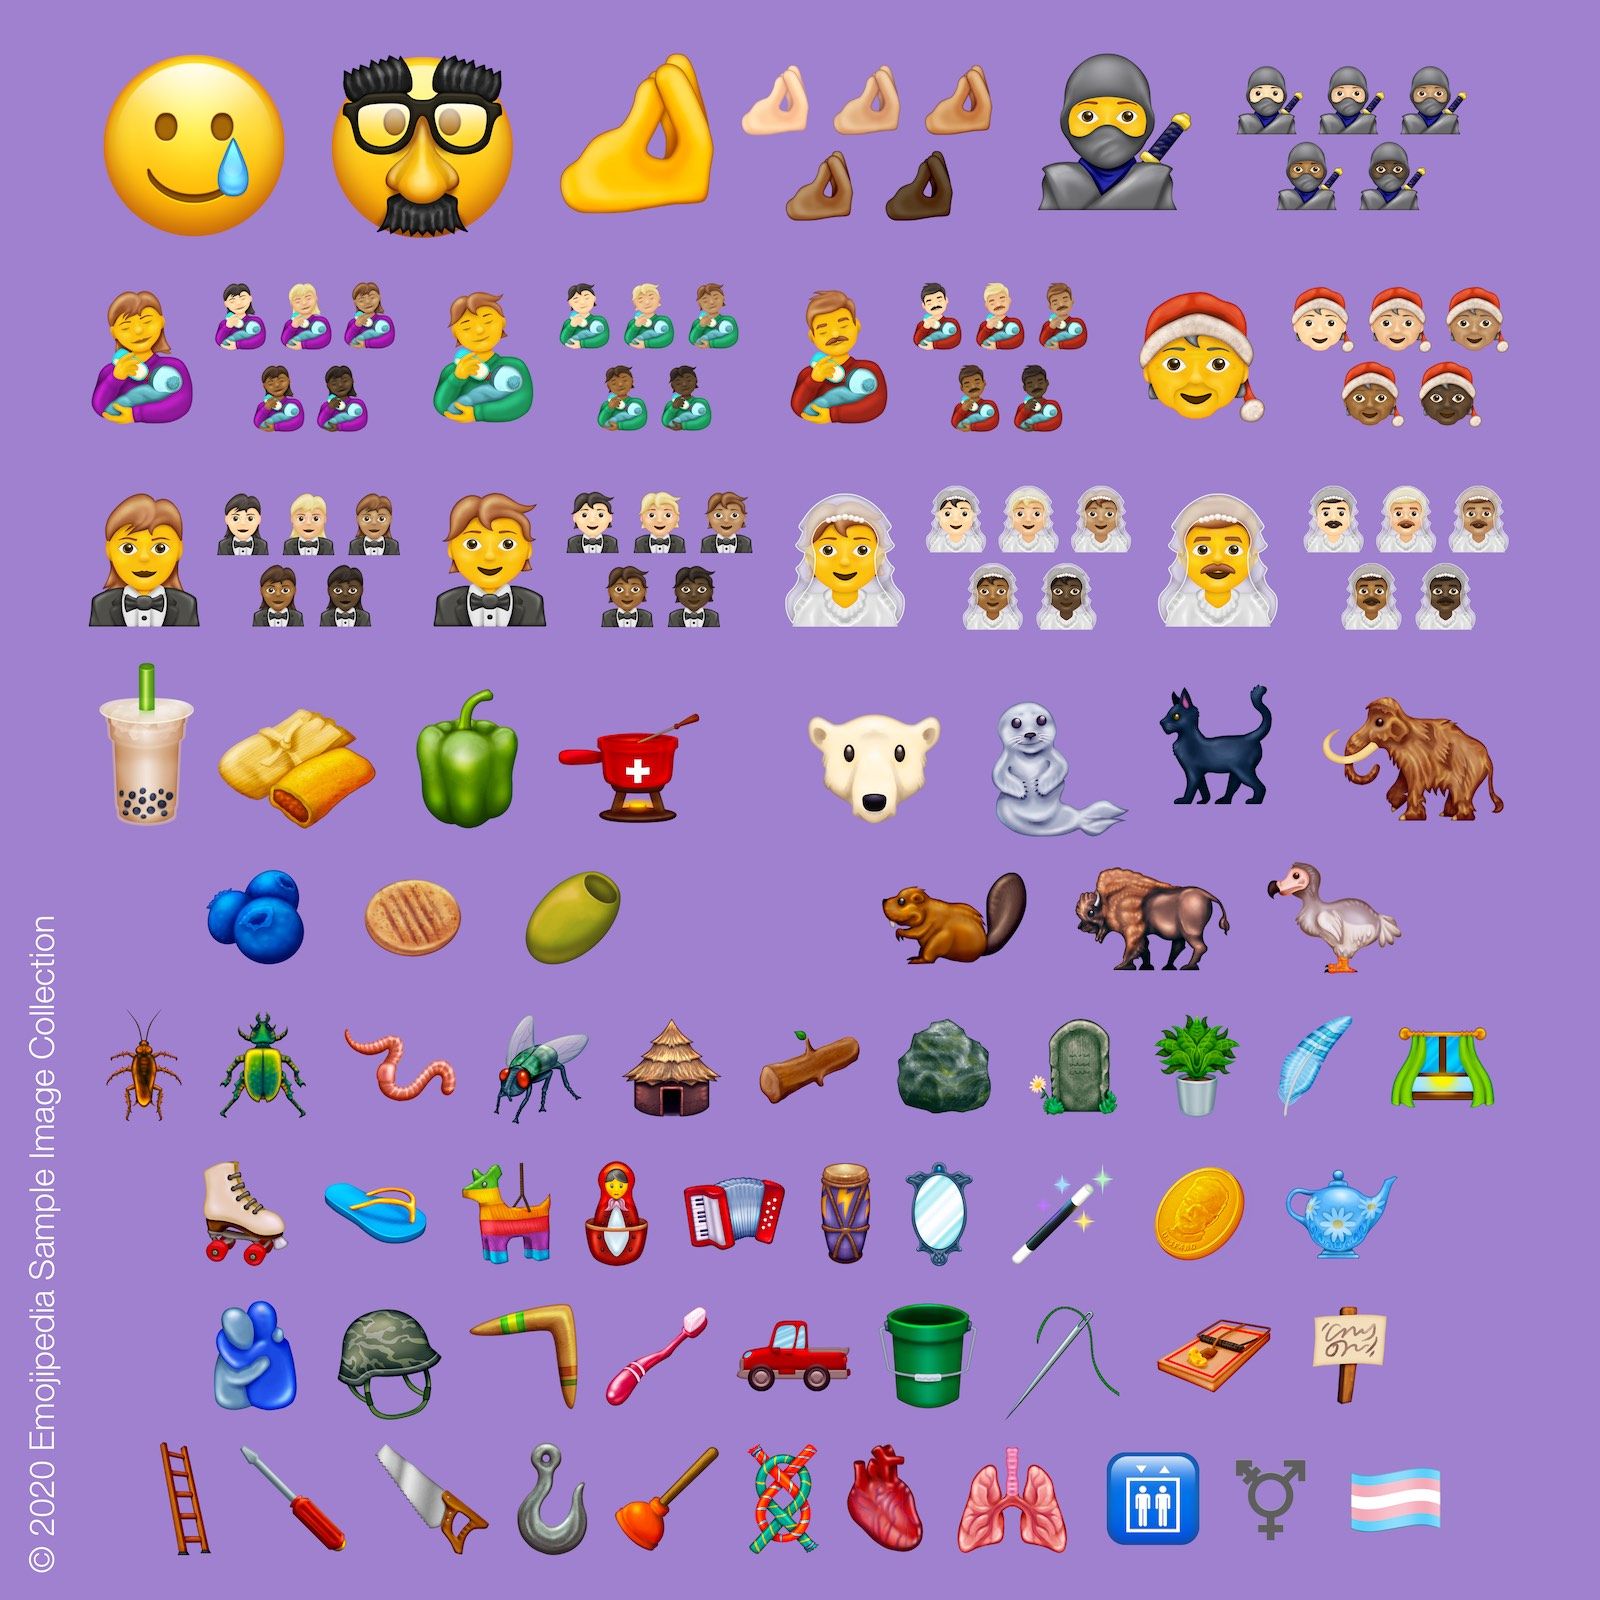 Bộ sưu tập hình ảnh mẫu từ Emojipedia 2020